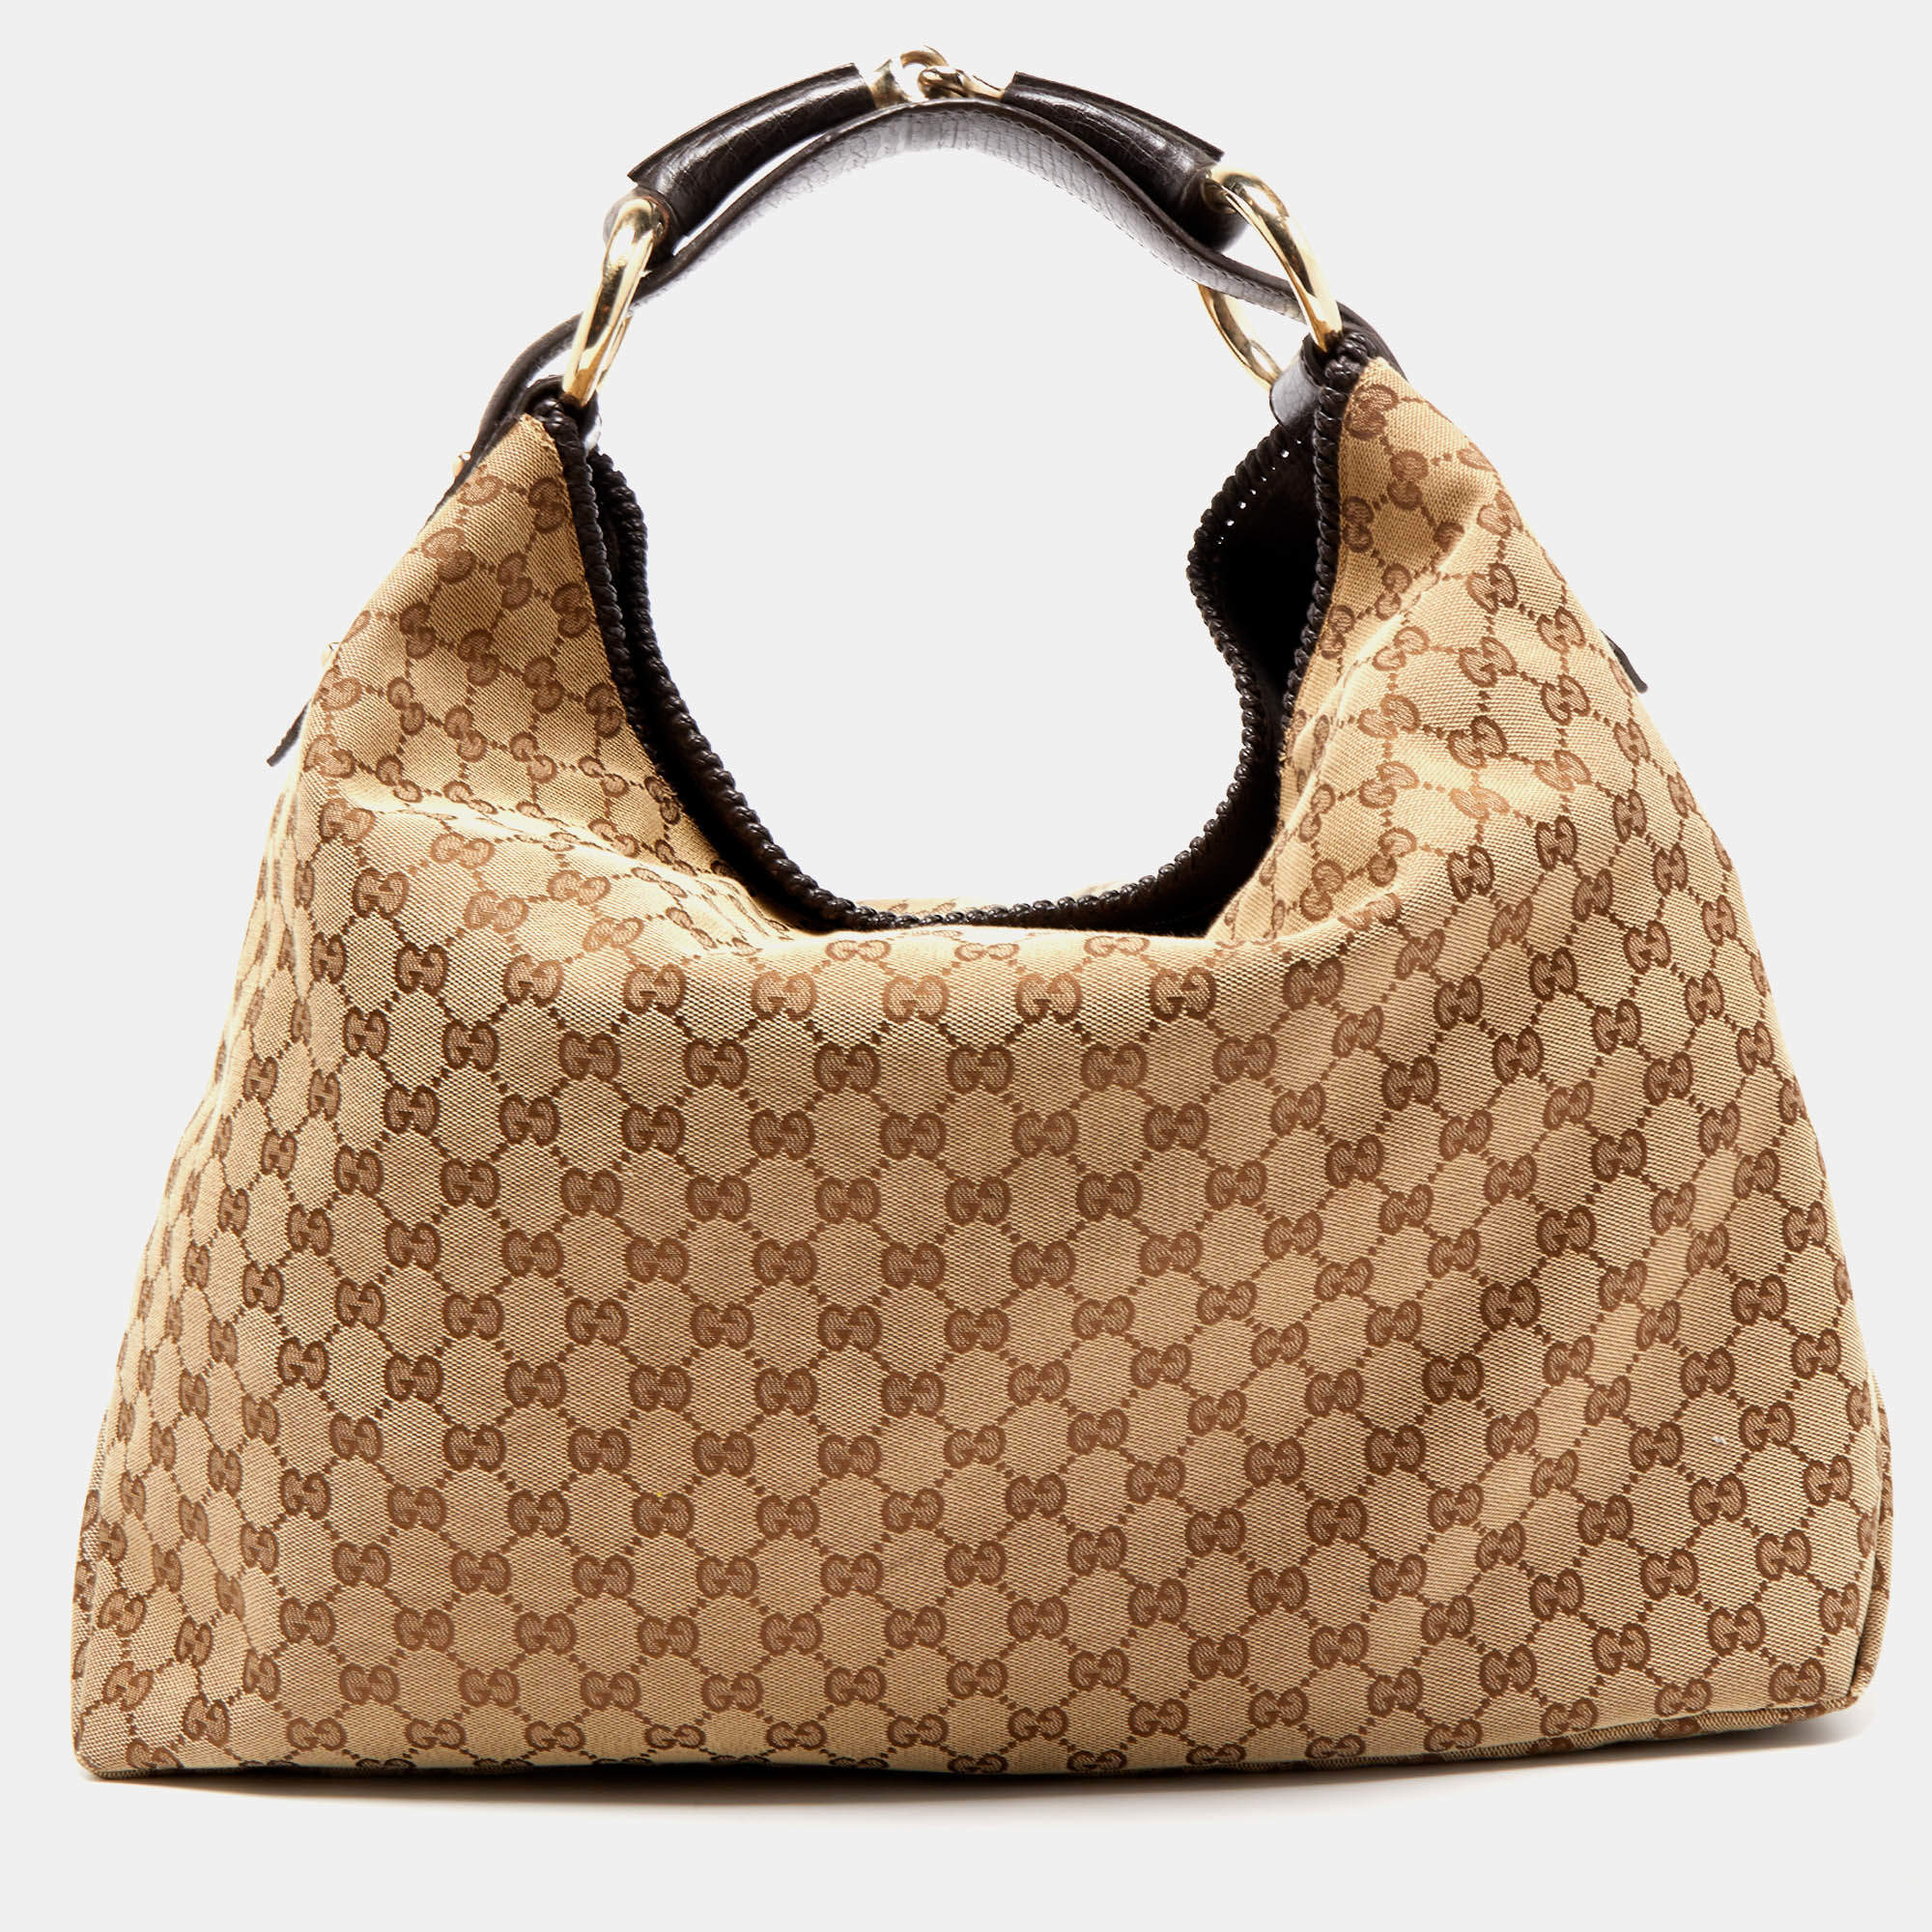 Gucci Horsebit Hobo GG Canvas Large  Women handbags, Fashion handbags,  Purses and handbags